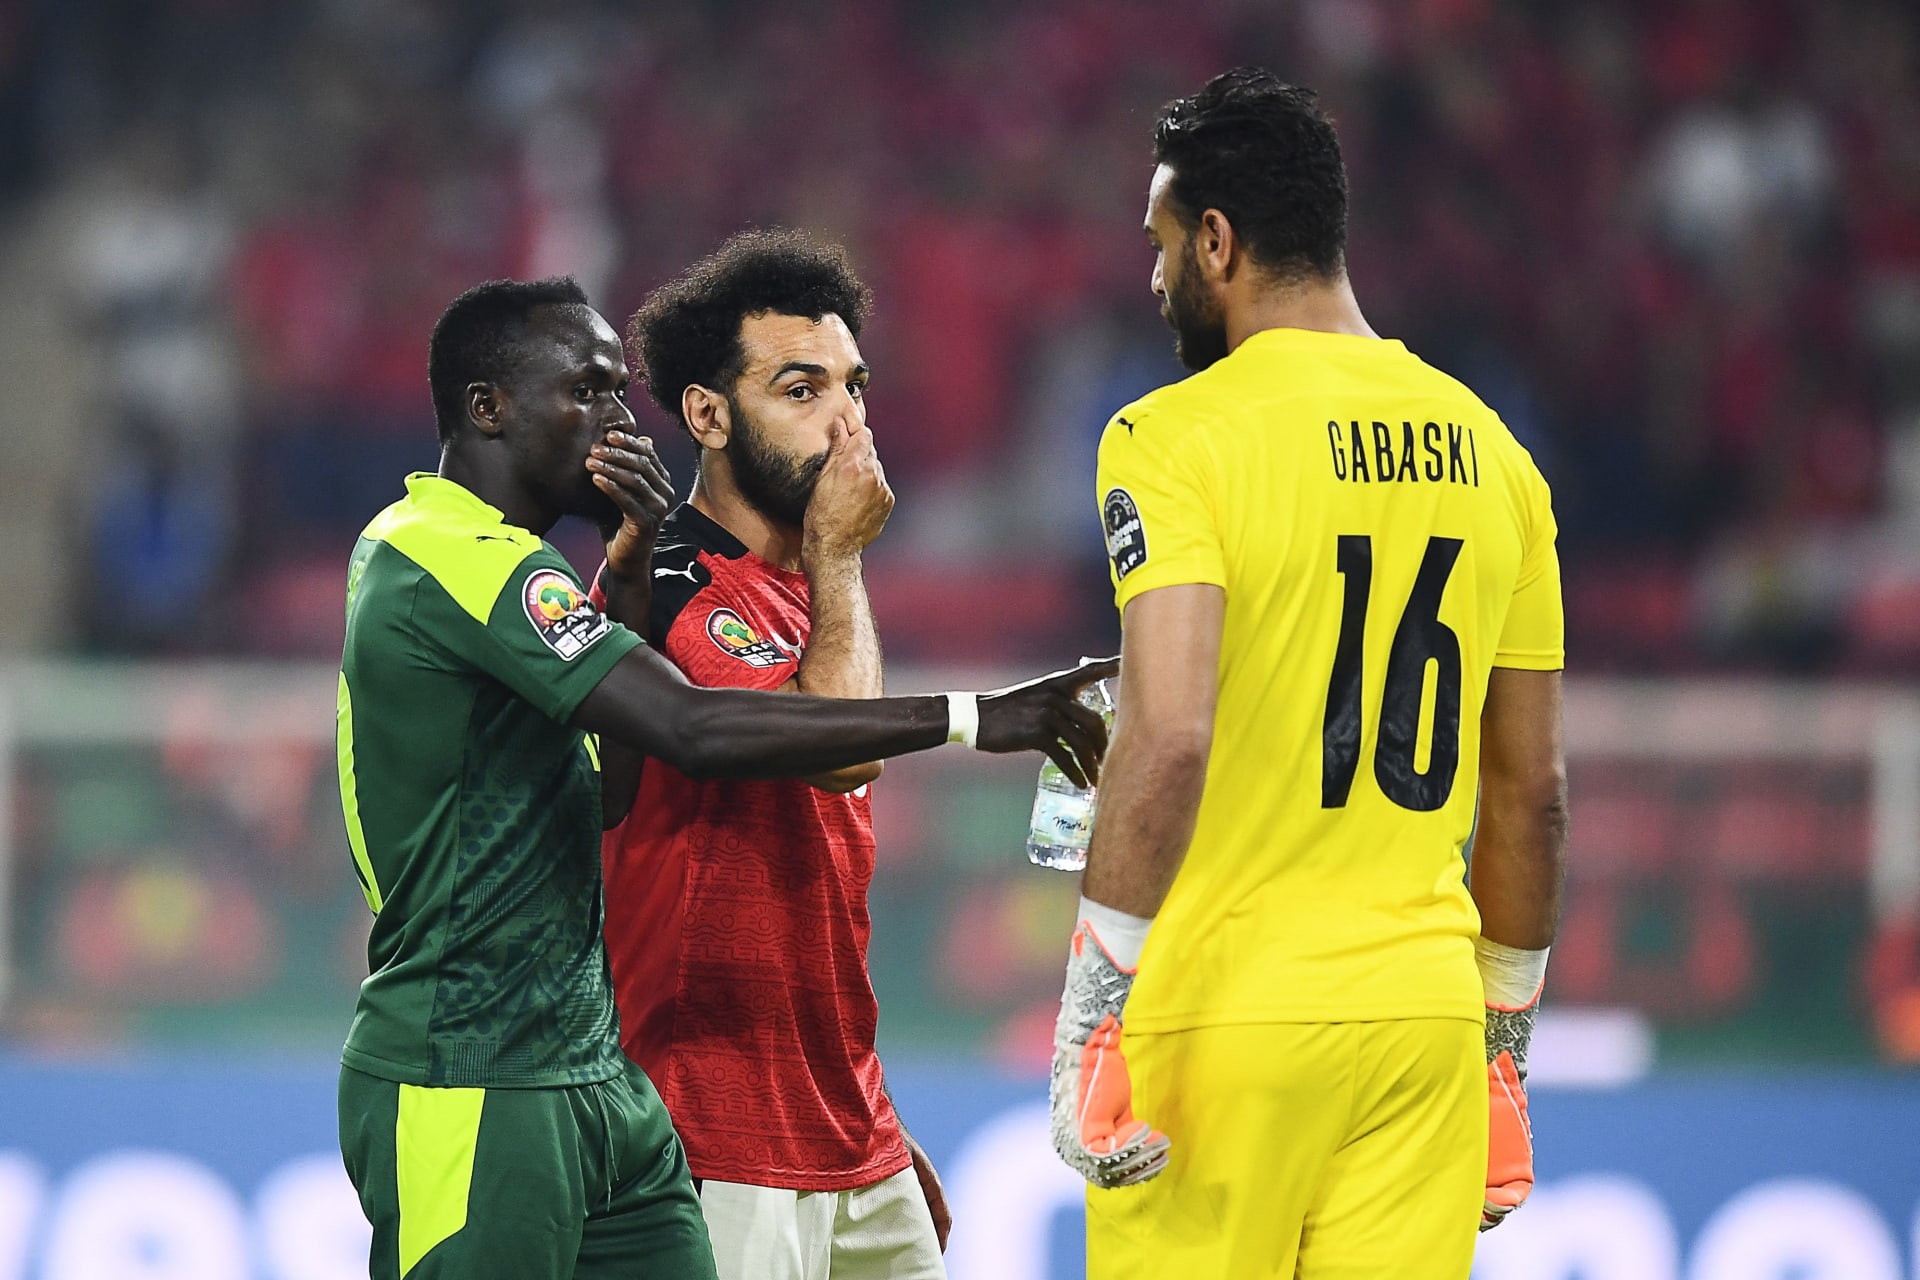 "لا يمتلك كأس إفريقيا".. تفاعل مع رد ساديو ماني على شخص سأله عن محمد صلاح